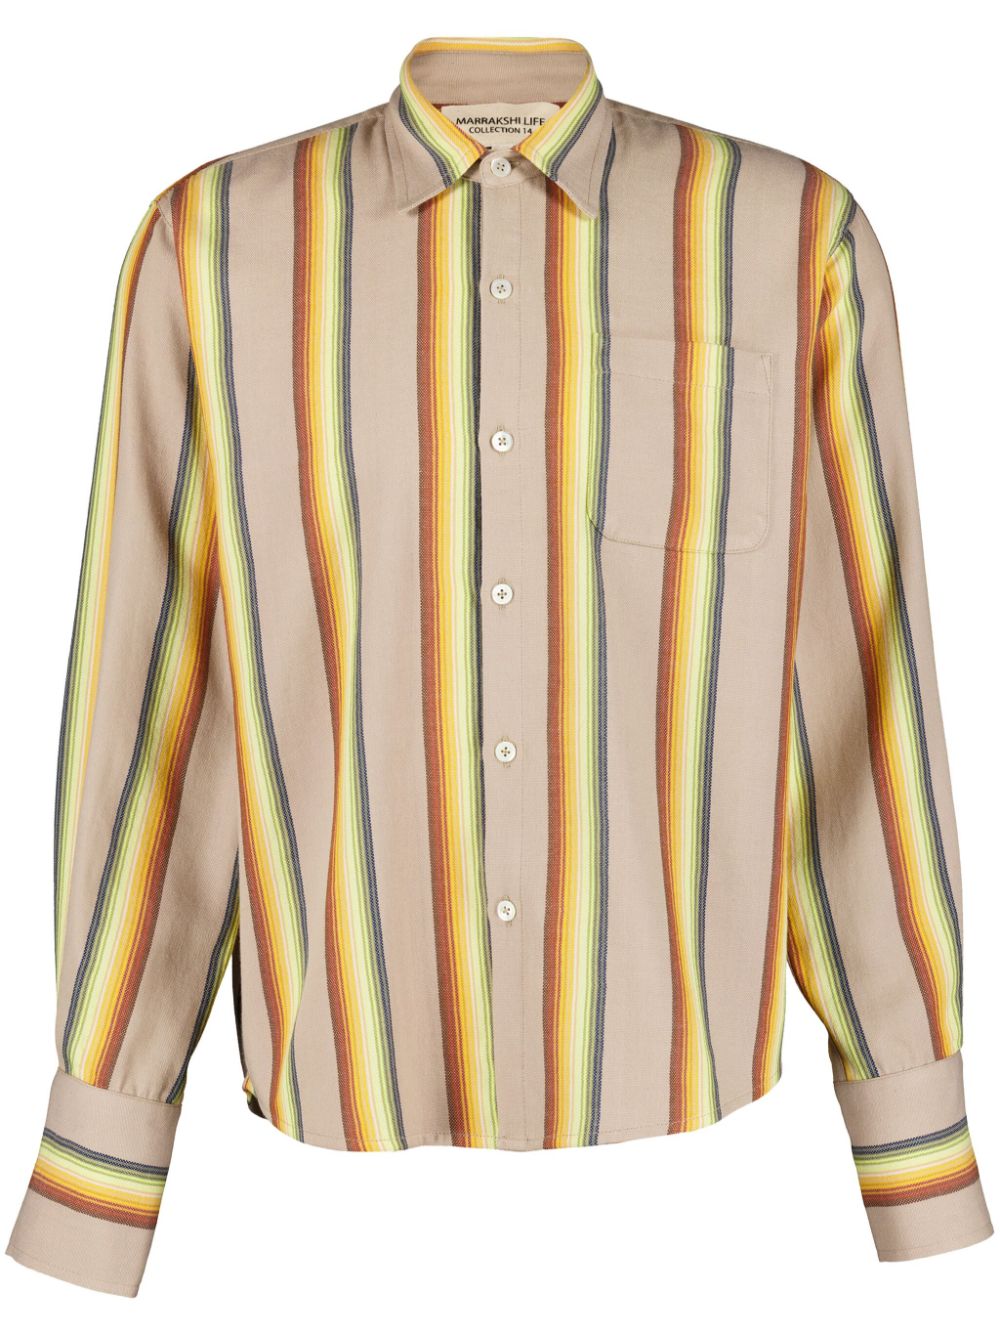 Marrakshi Life striped cotton shirt - Neutrals von Marrakshi Life